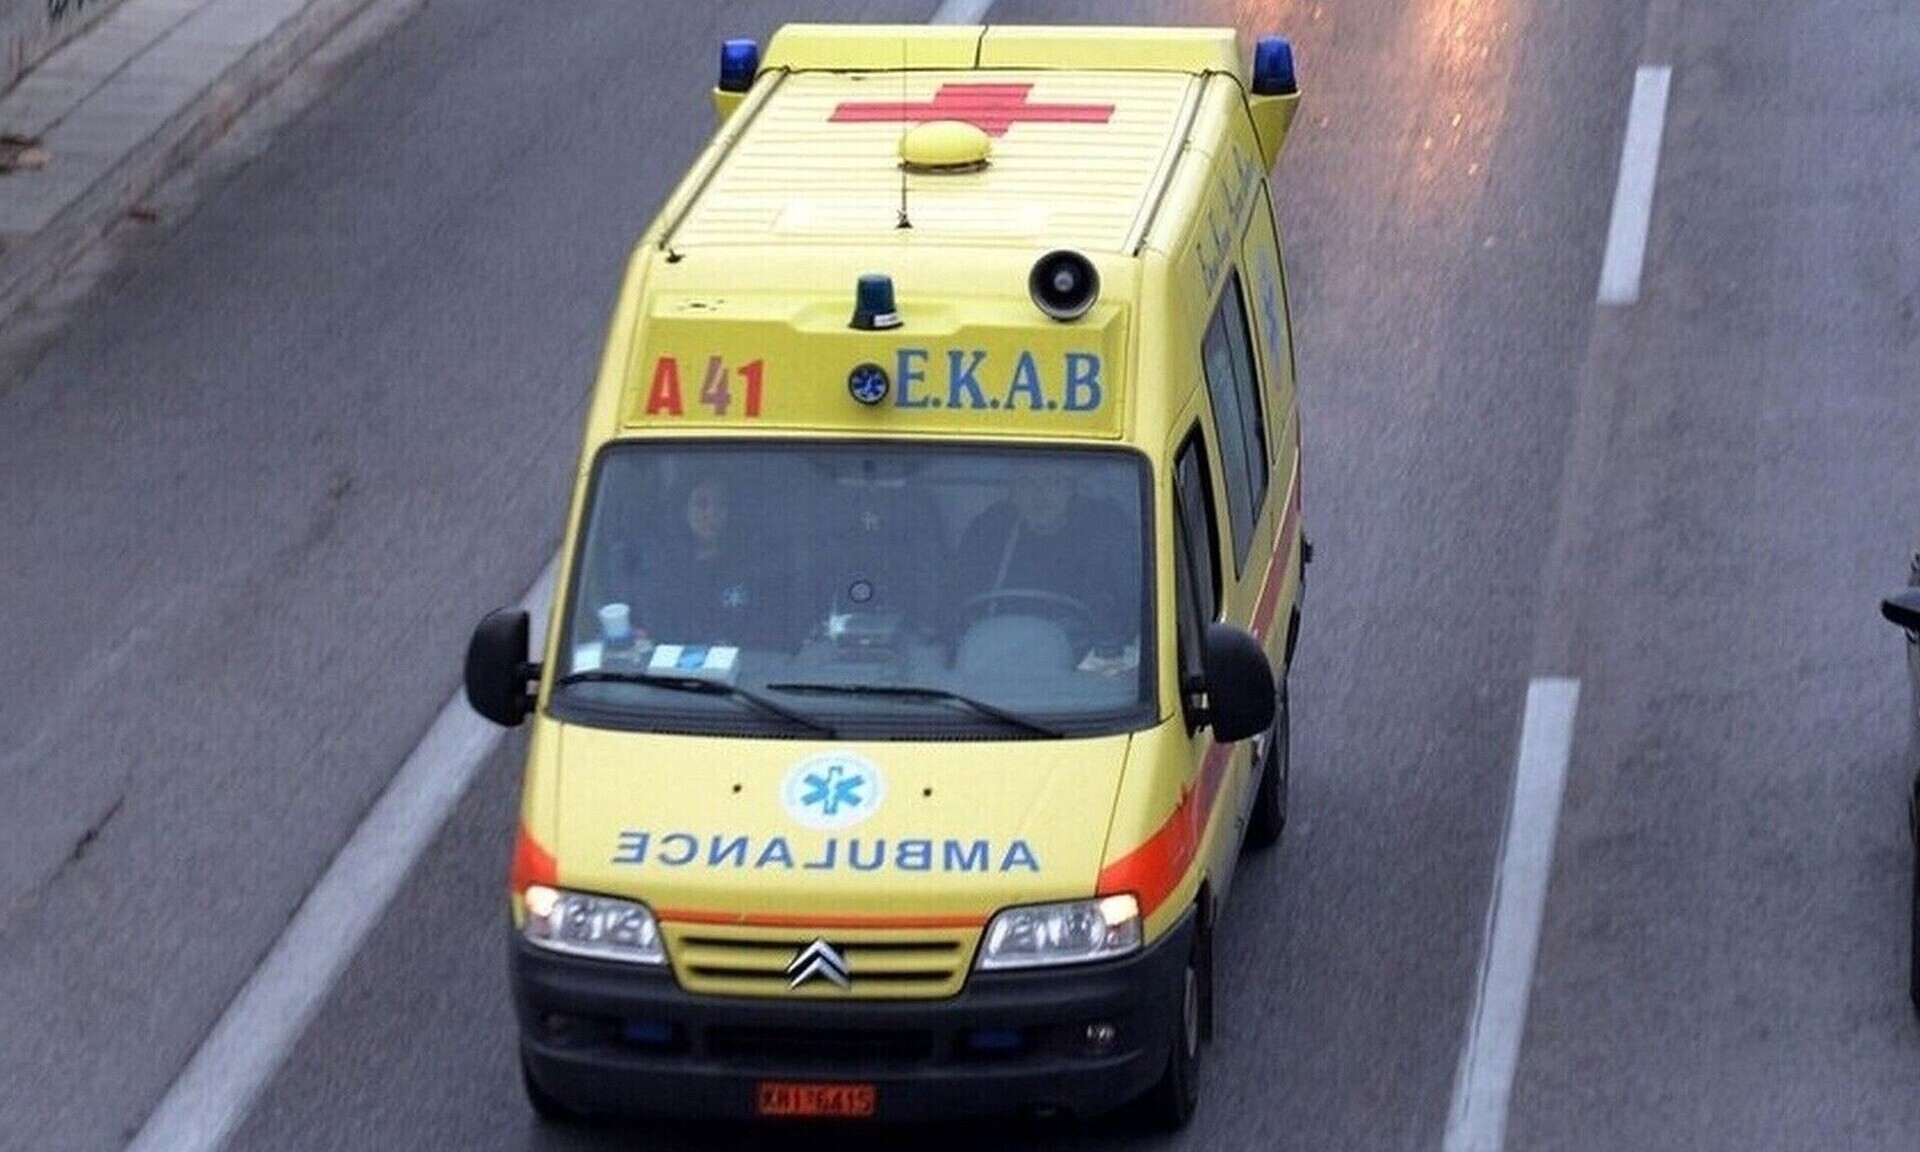 Τραγωδία στην Πάτρα: Νεκρός οδηγός αυτοκινήτου που προσέκρουσε σε μάντρα σπιτιού